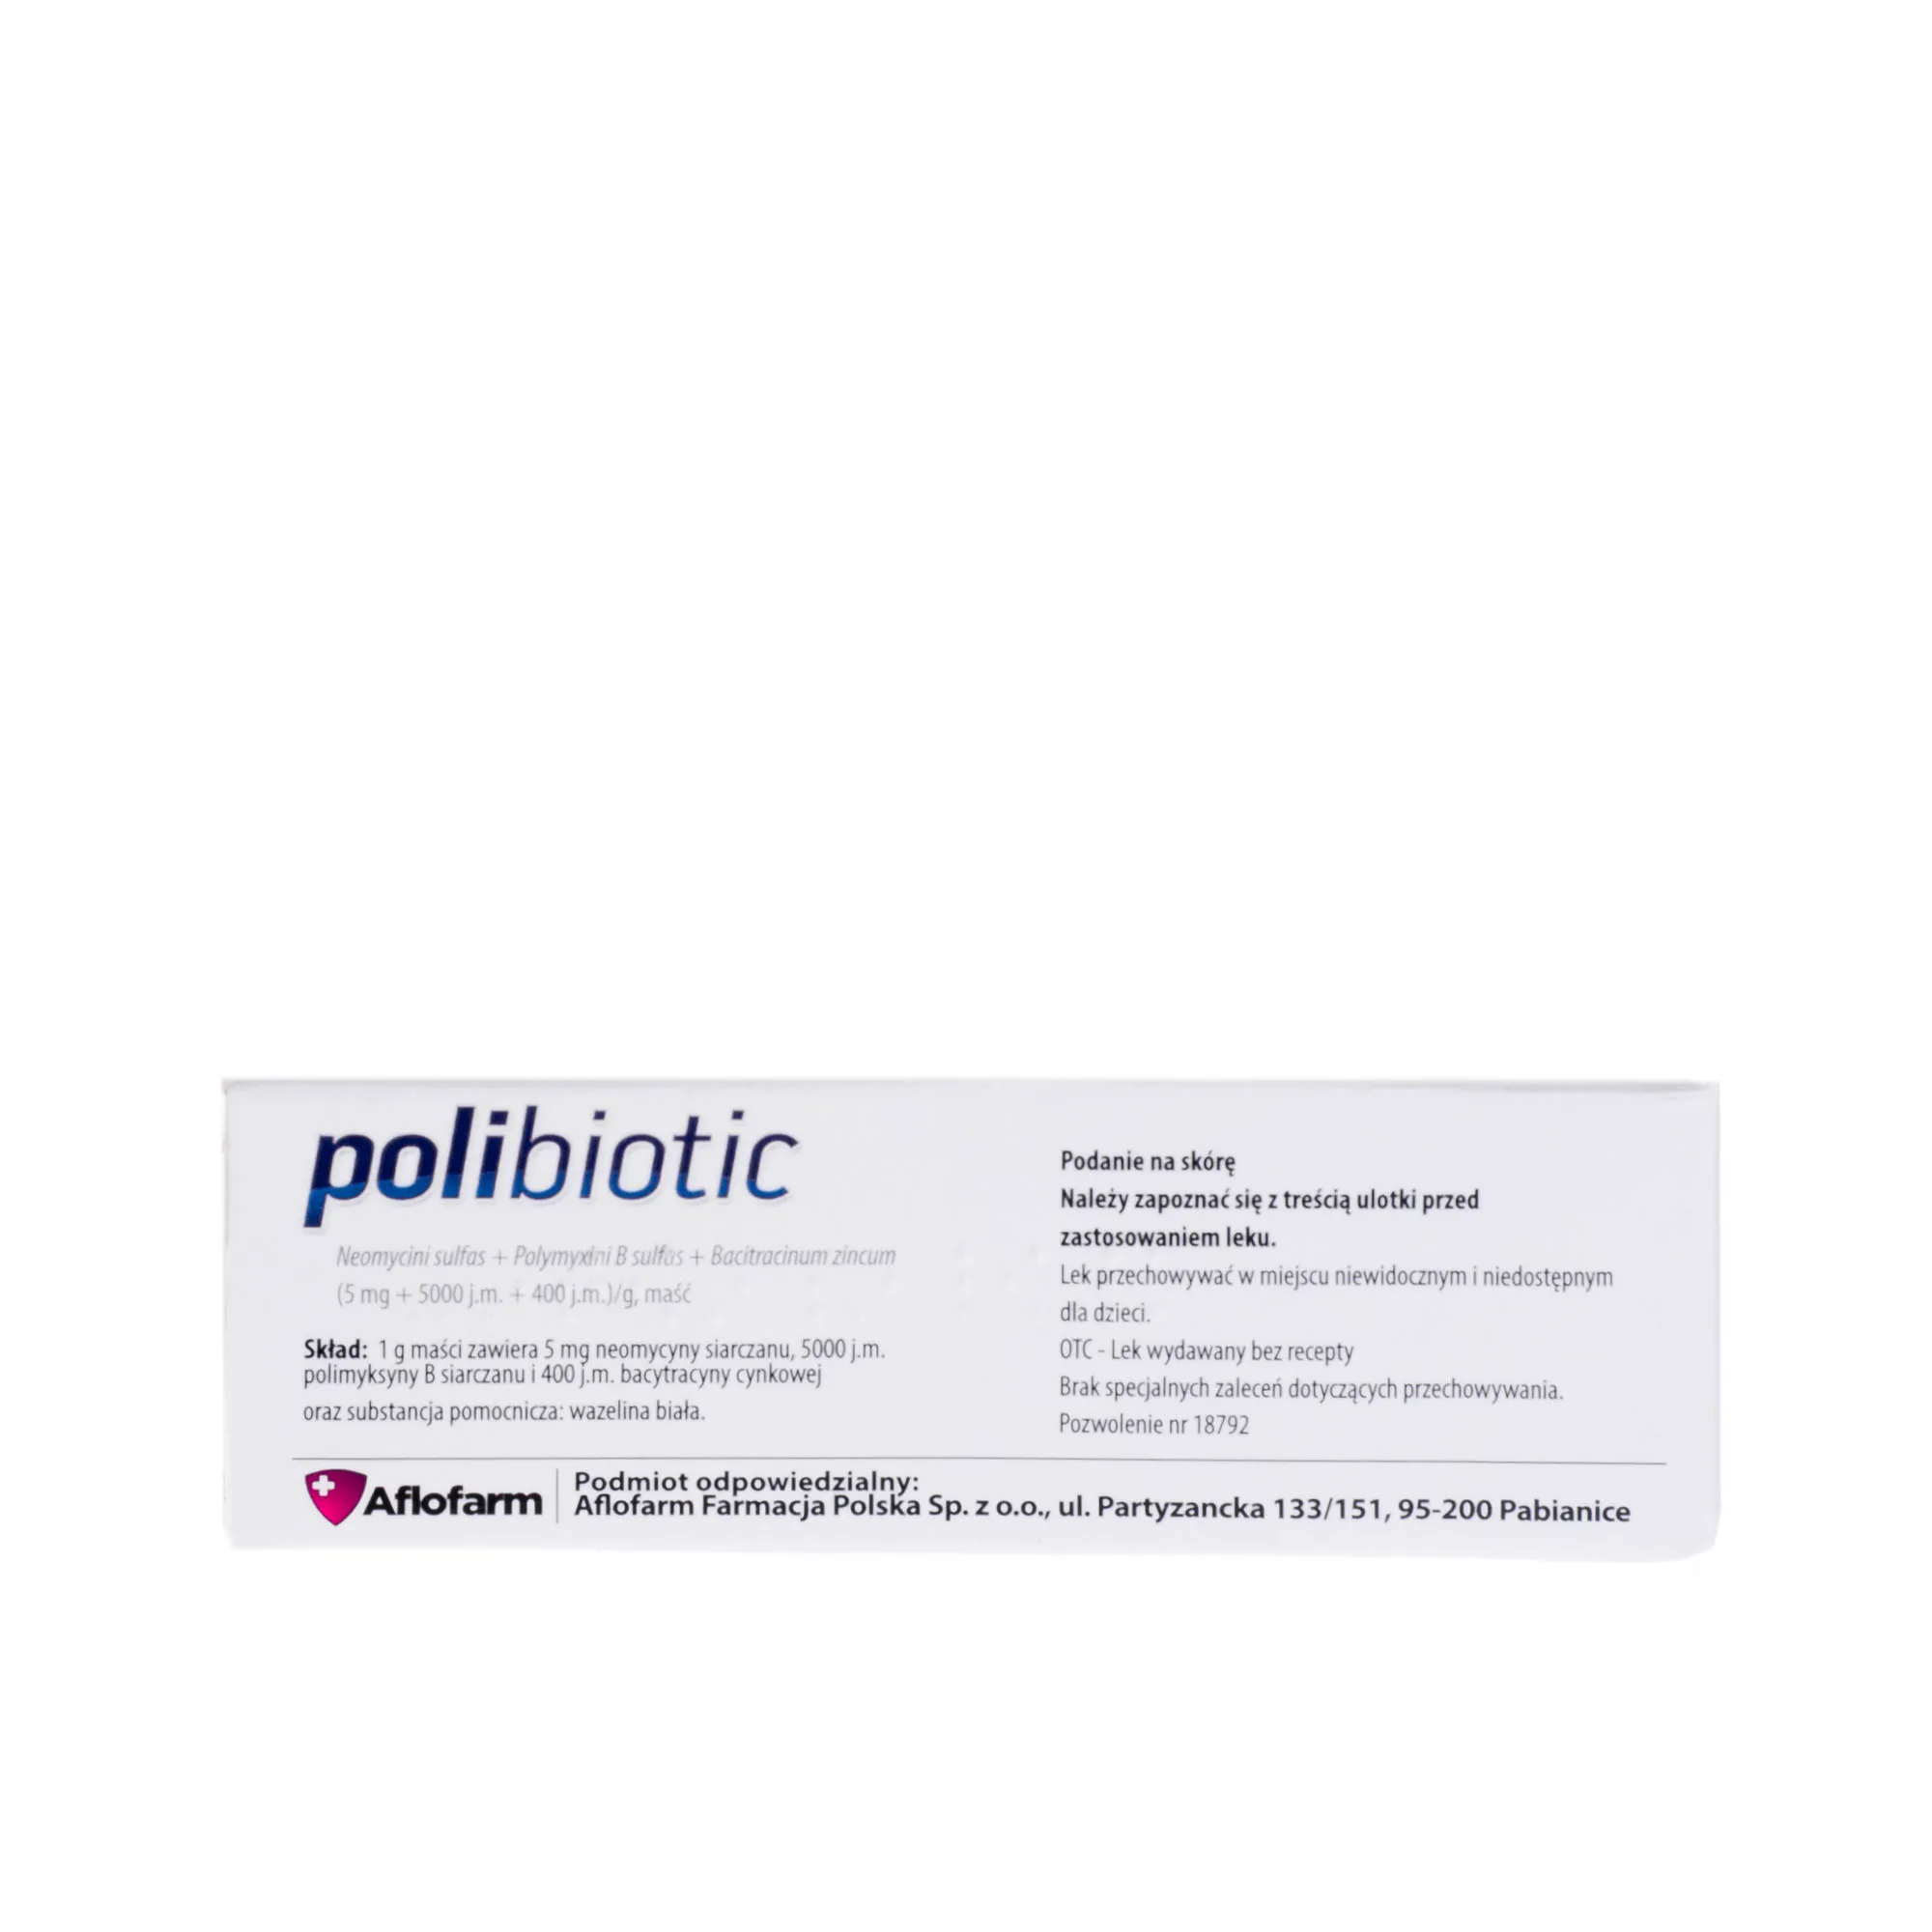 Polibiotic(5 mg+ 5000 j.m. + 400 j.m., maść, 15 g 